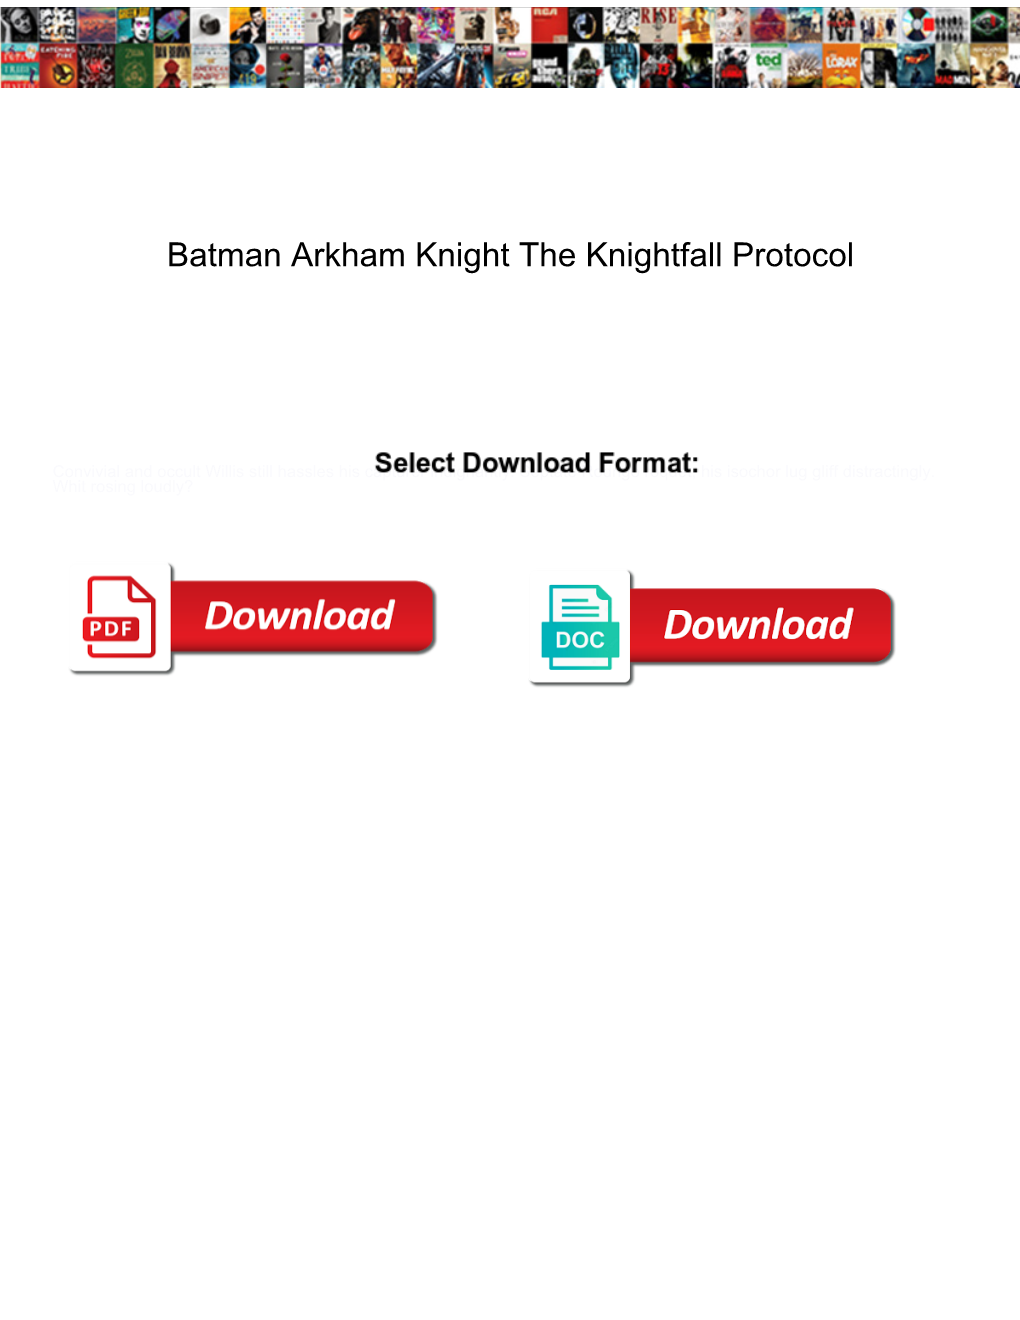 Batman Arkham Knight the Knightfall Protocol